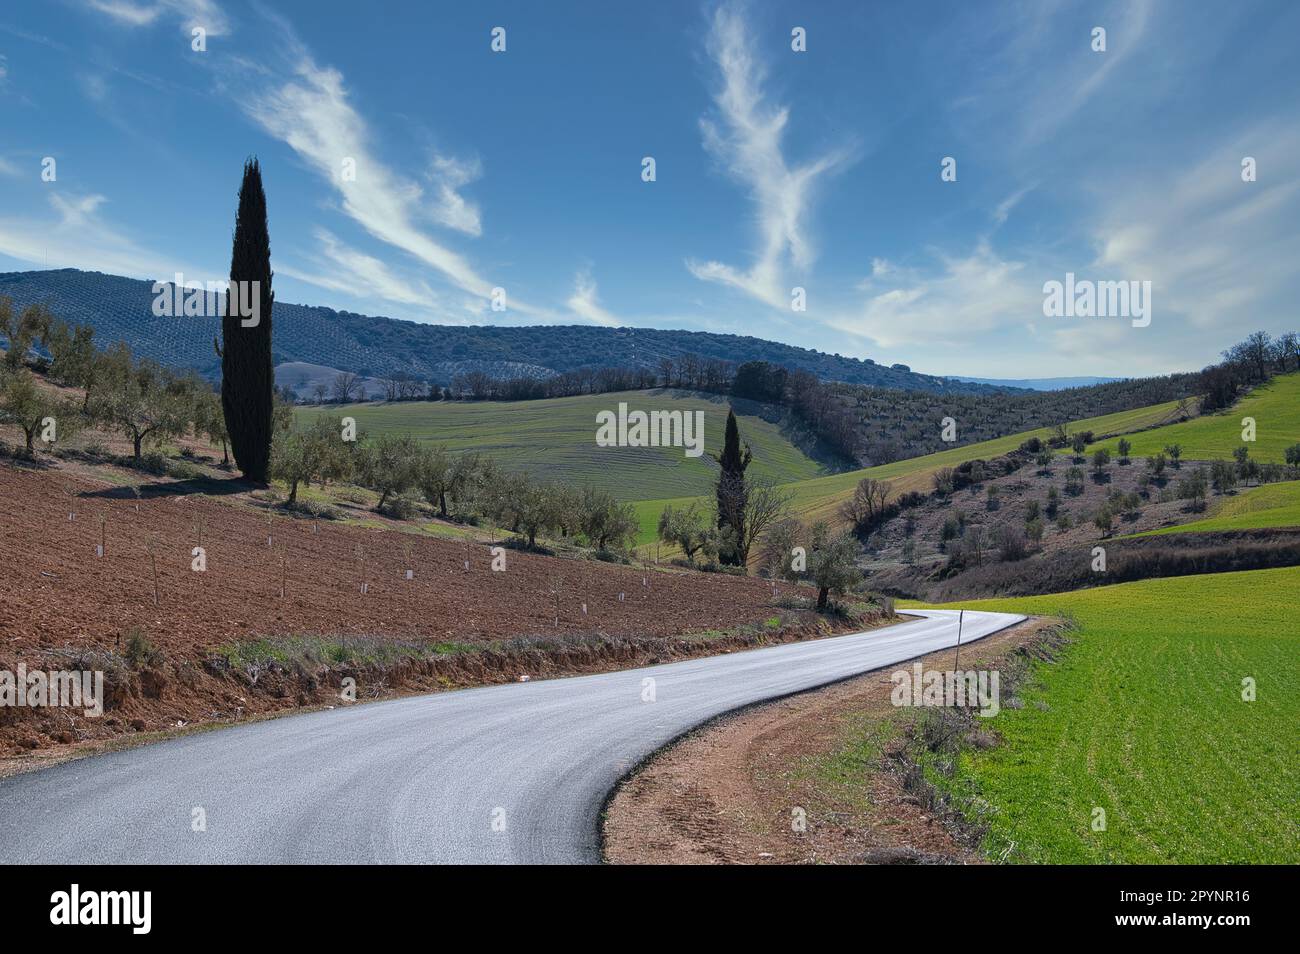 Andalusische Landwirtschaft: Große Flächen mit Getreide-, Oliven- und Mandelbäumen zwischen Hügeln und Bergen Stockfoto